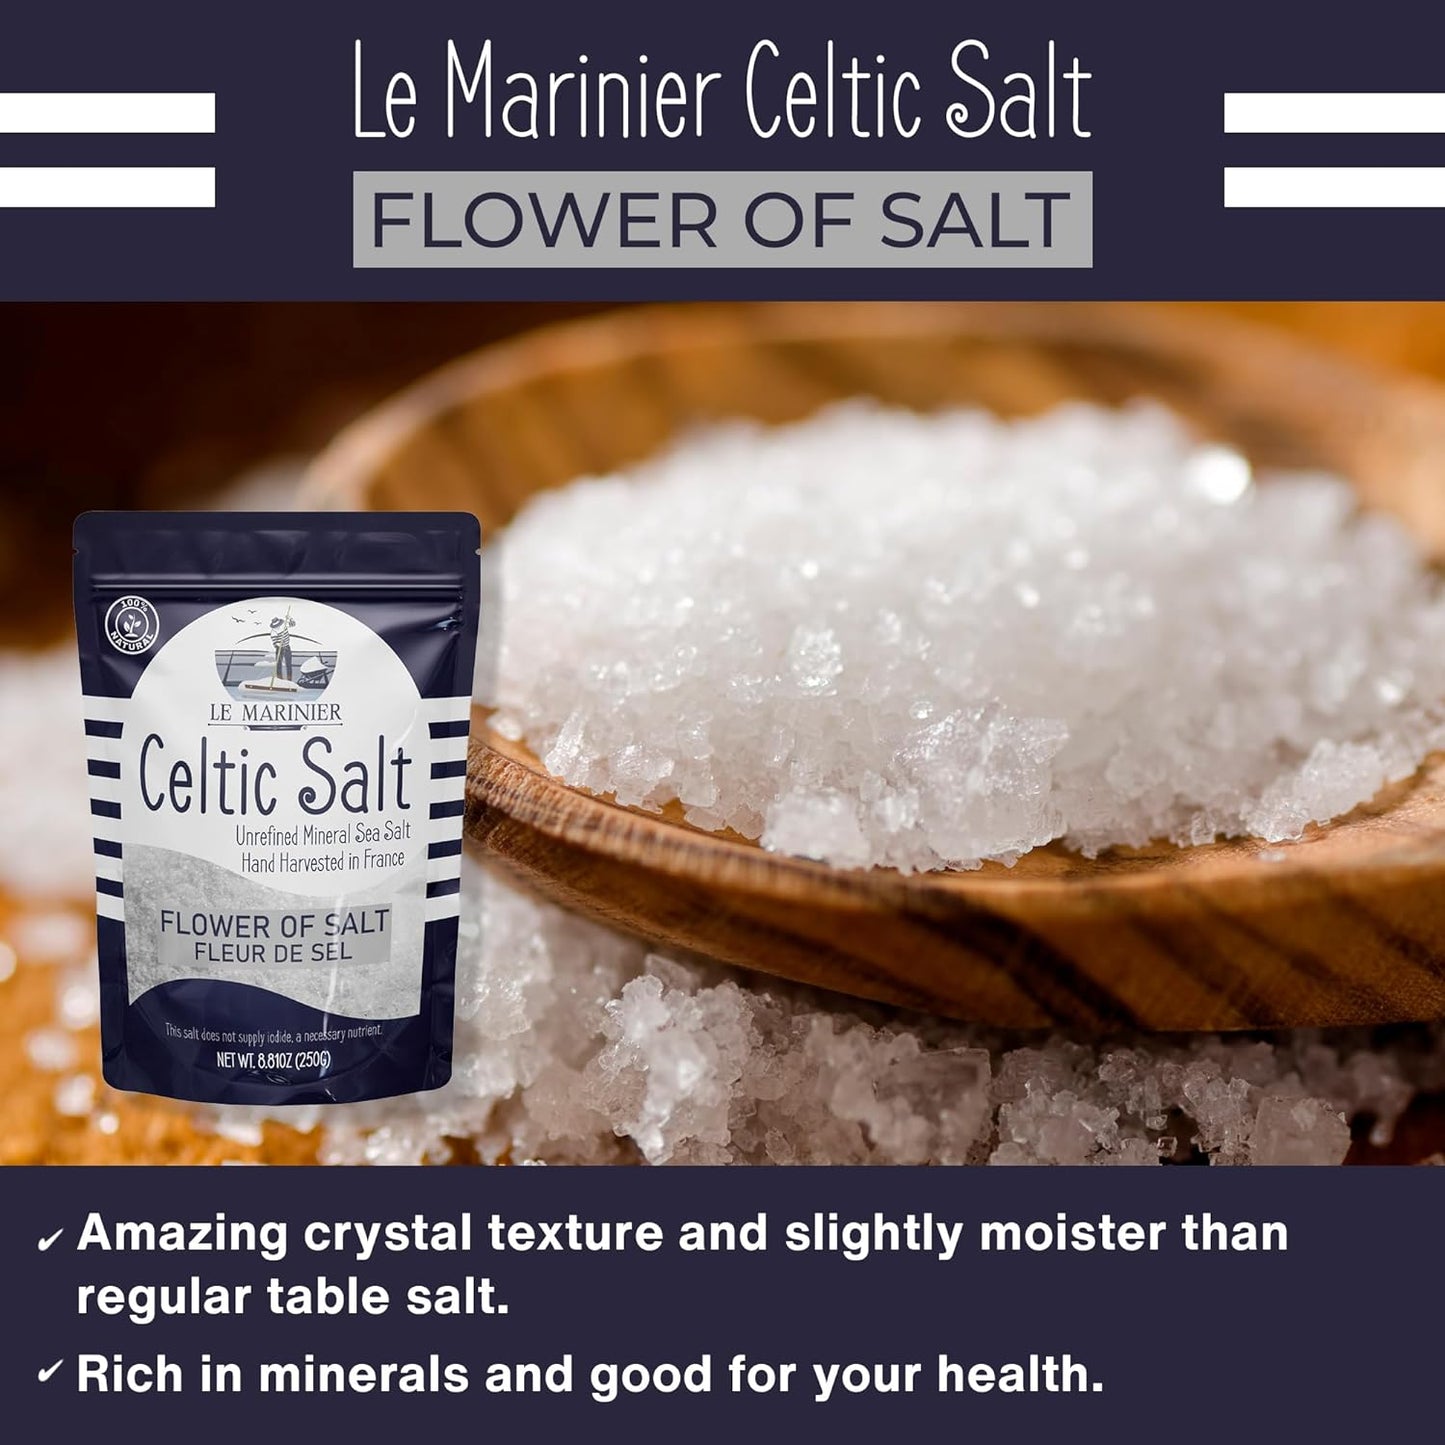 Flower of Salt 8.81oz / 250g regular table salt